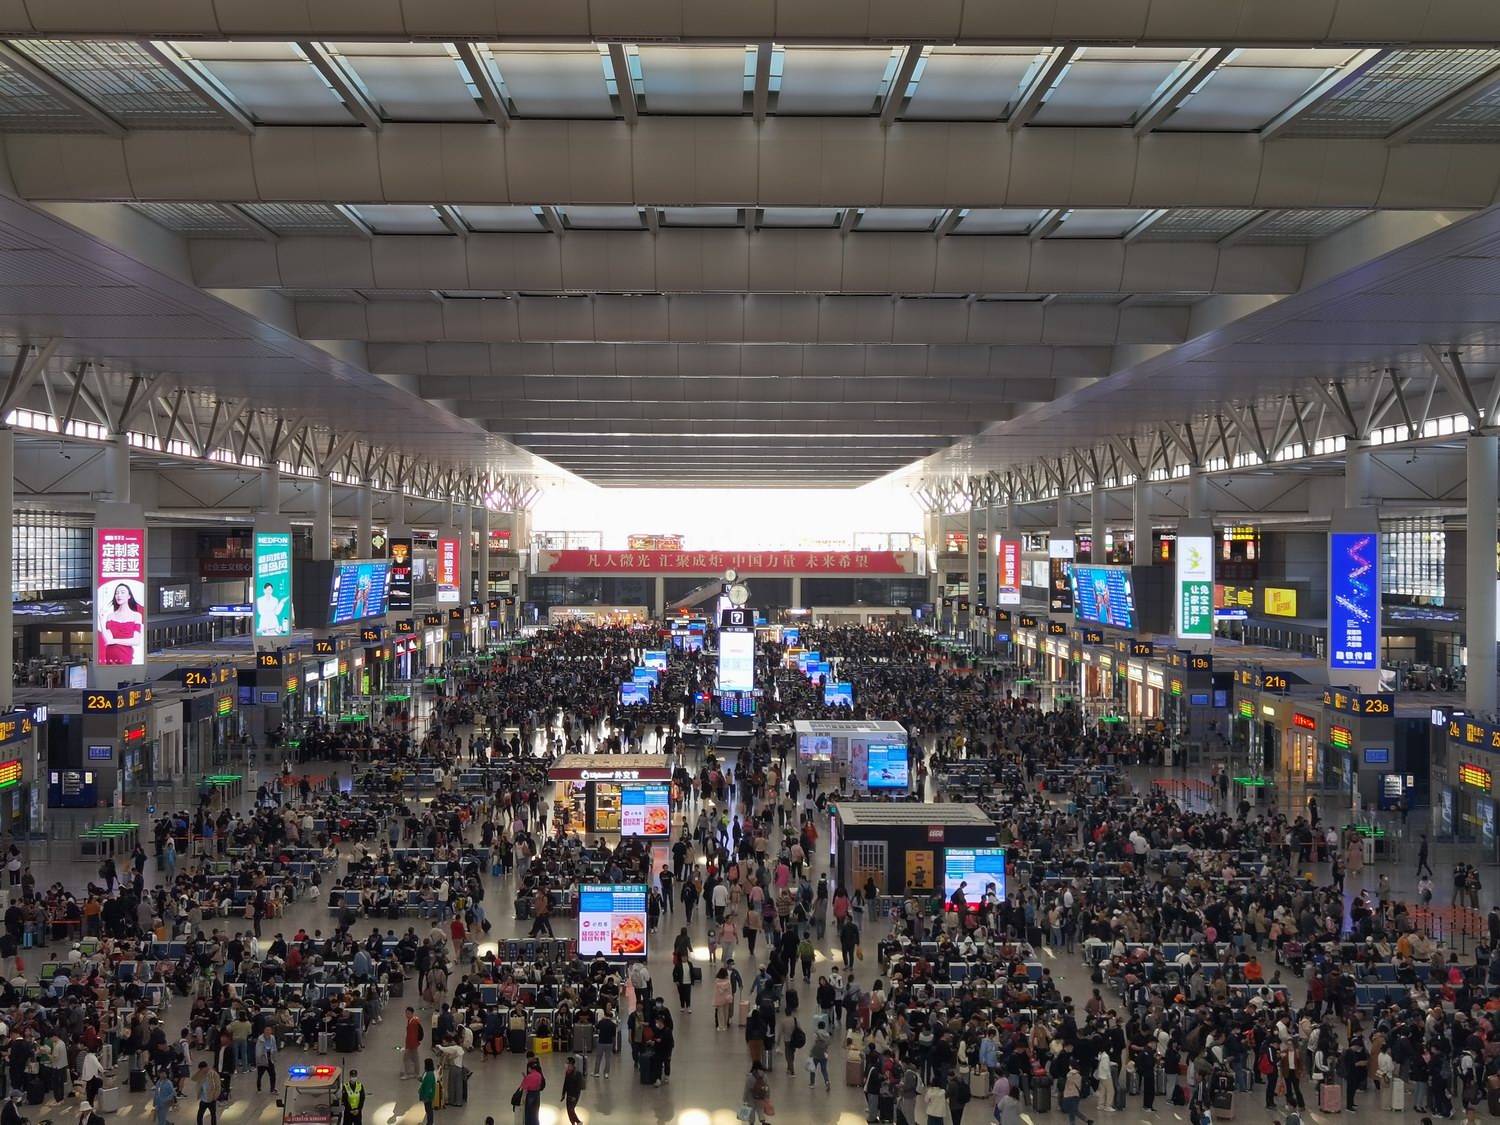 铁路上海站今日迎五一返程客流高峰,预计到达旅客58万人次